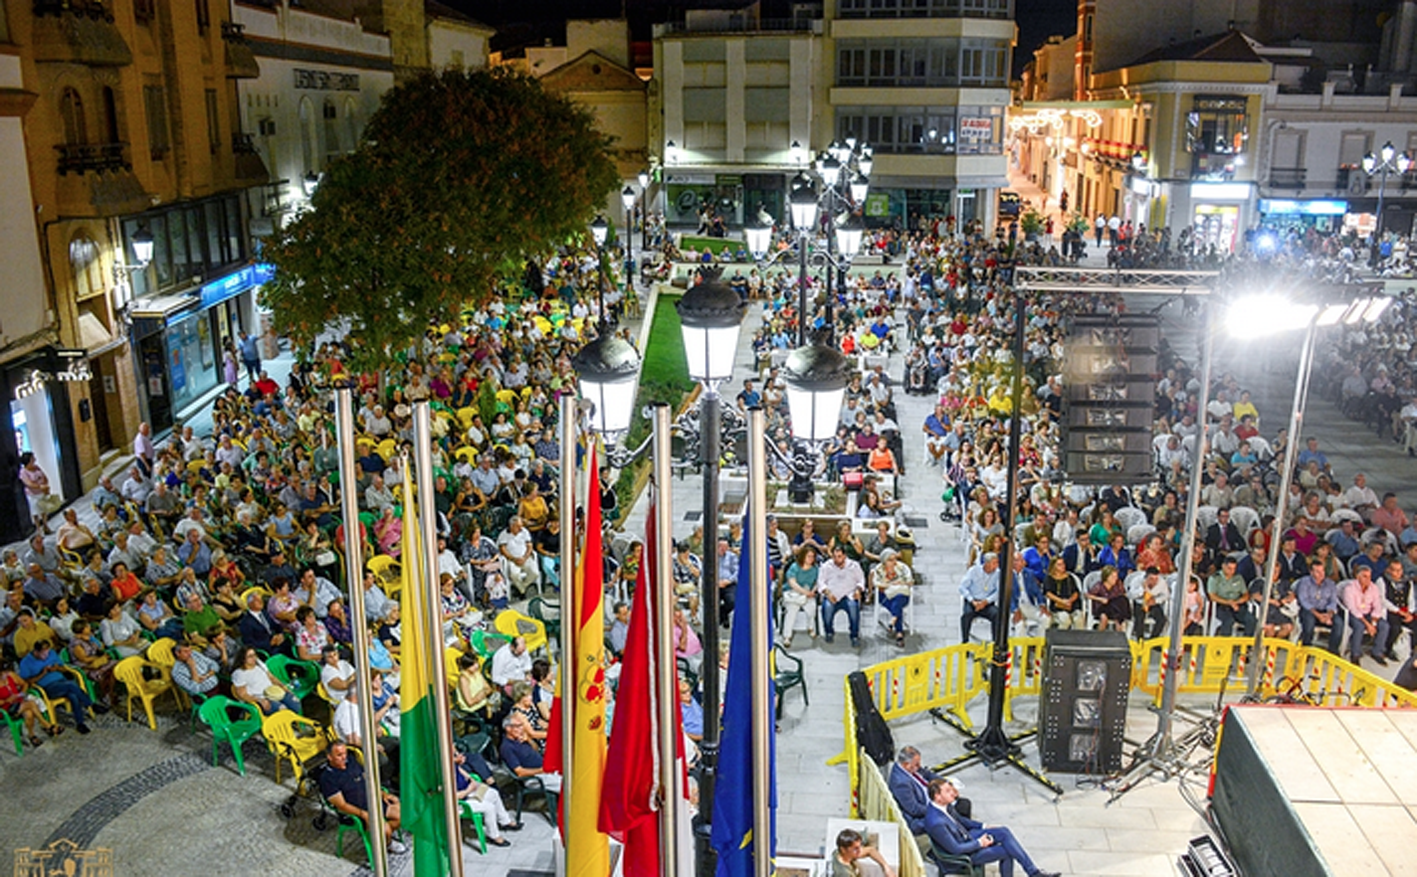 Los actos multitudinarios no se podrán celebrar en la Feria y Fiestas de Tomelloso, por lo que se han suspendido.